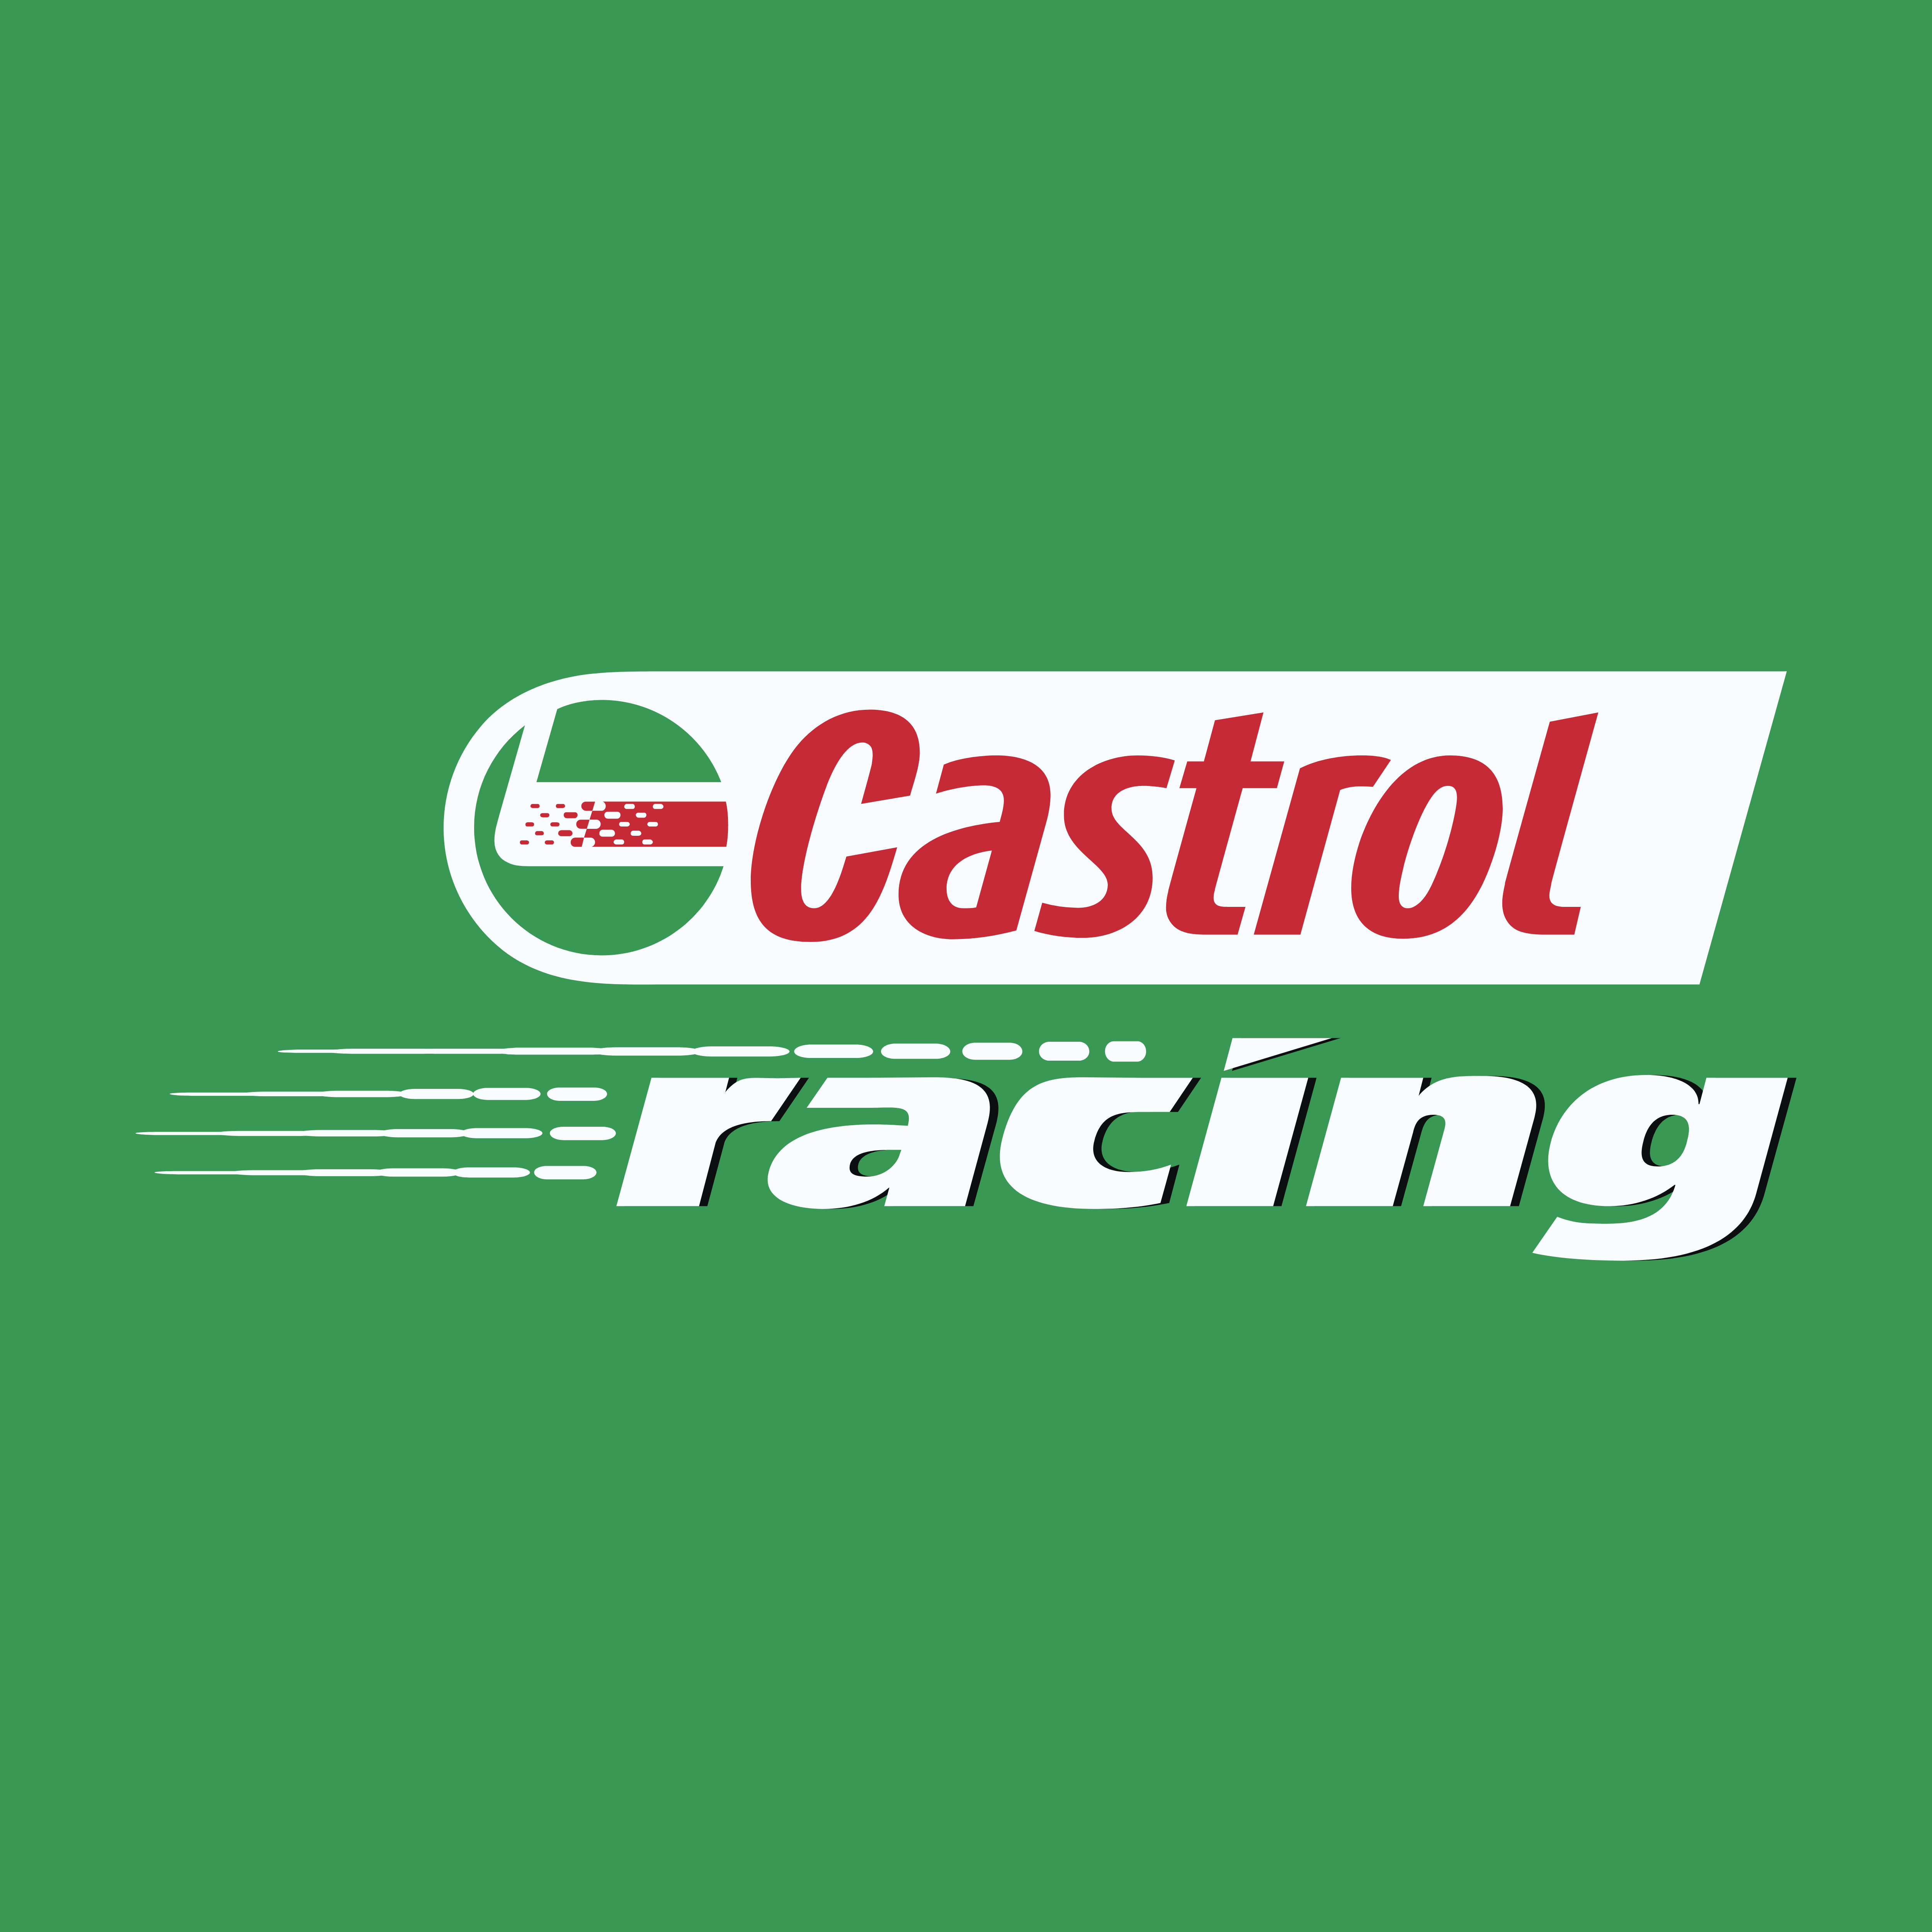 Castrol – Logos Download